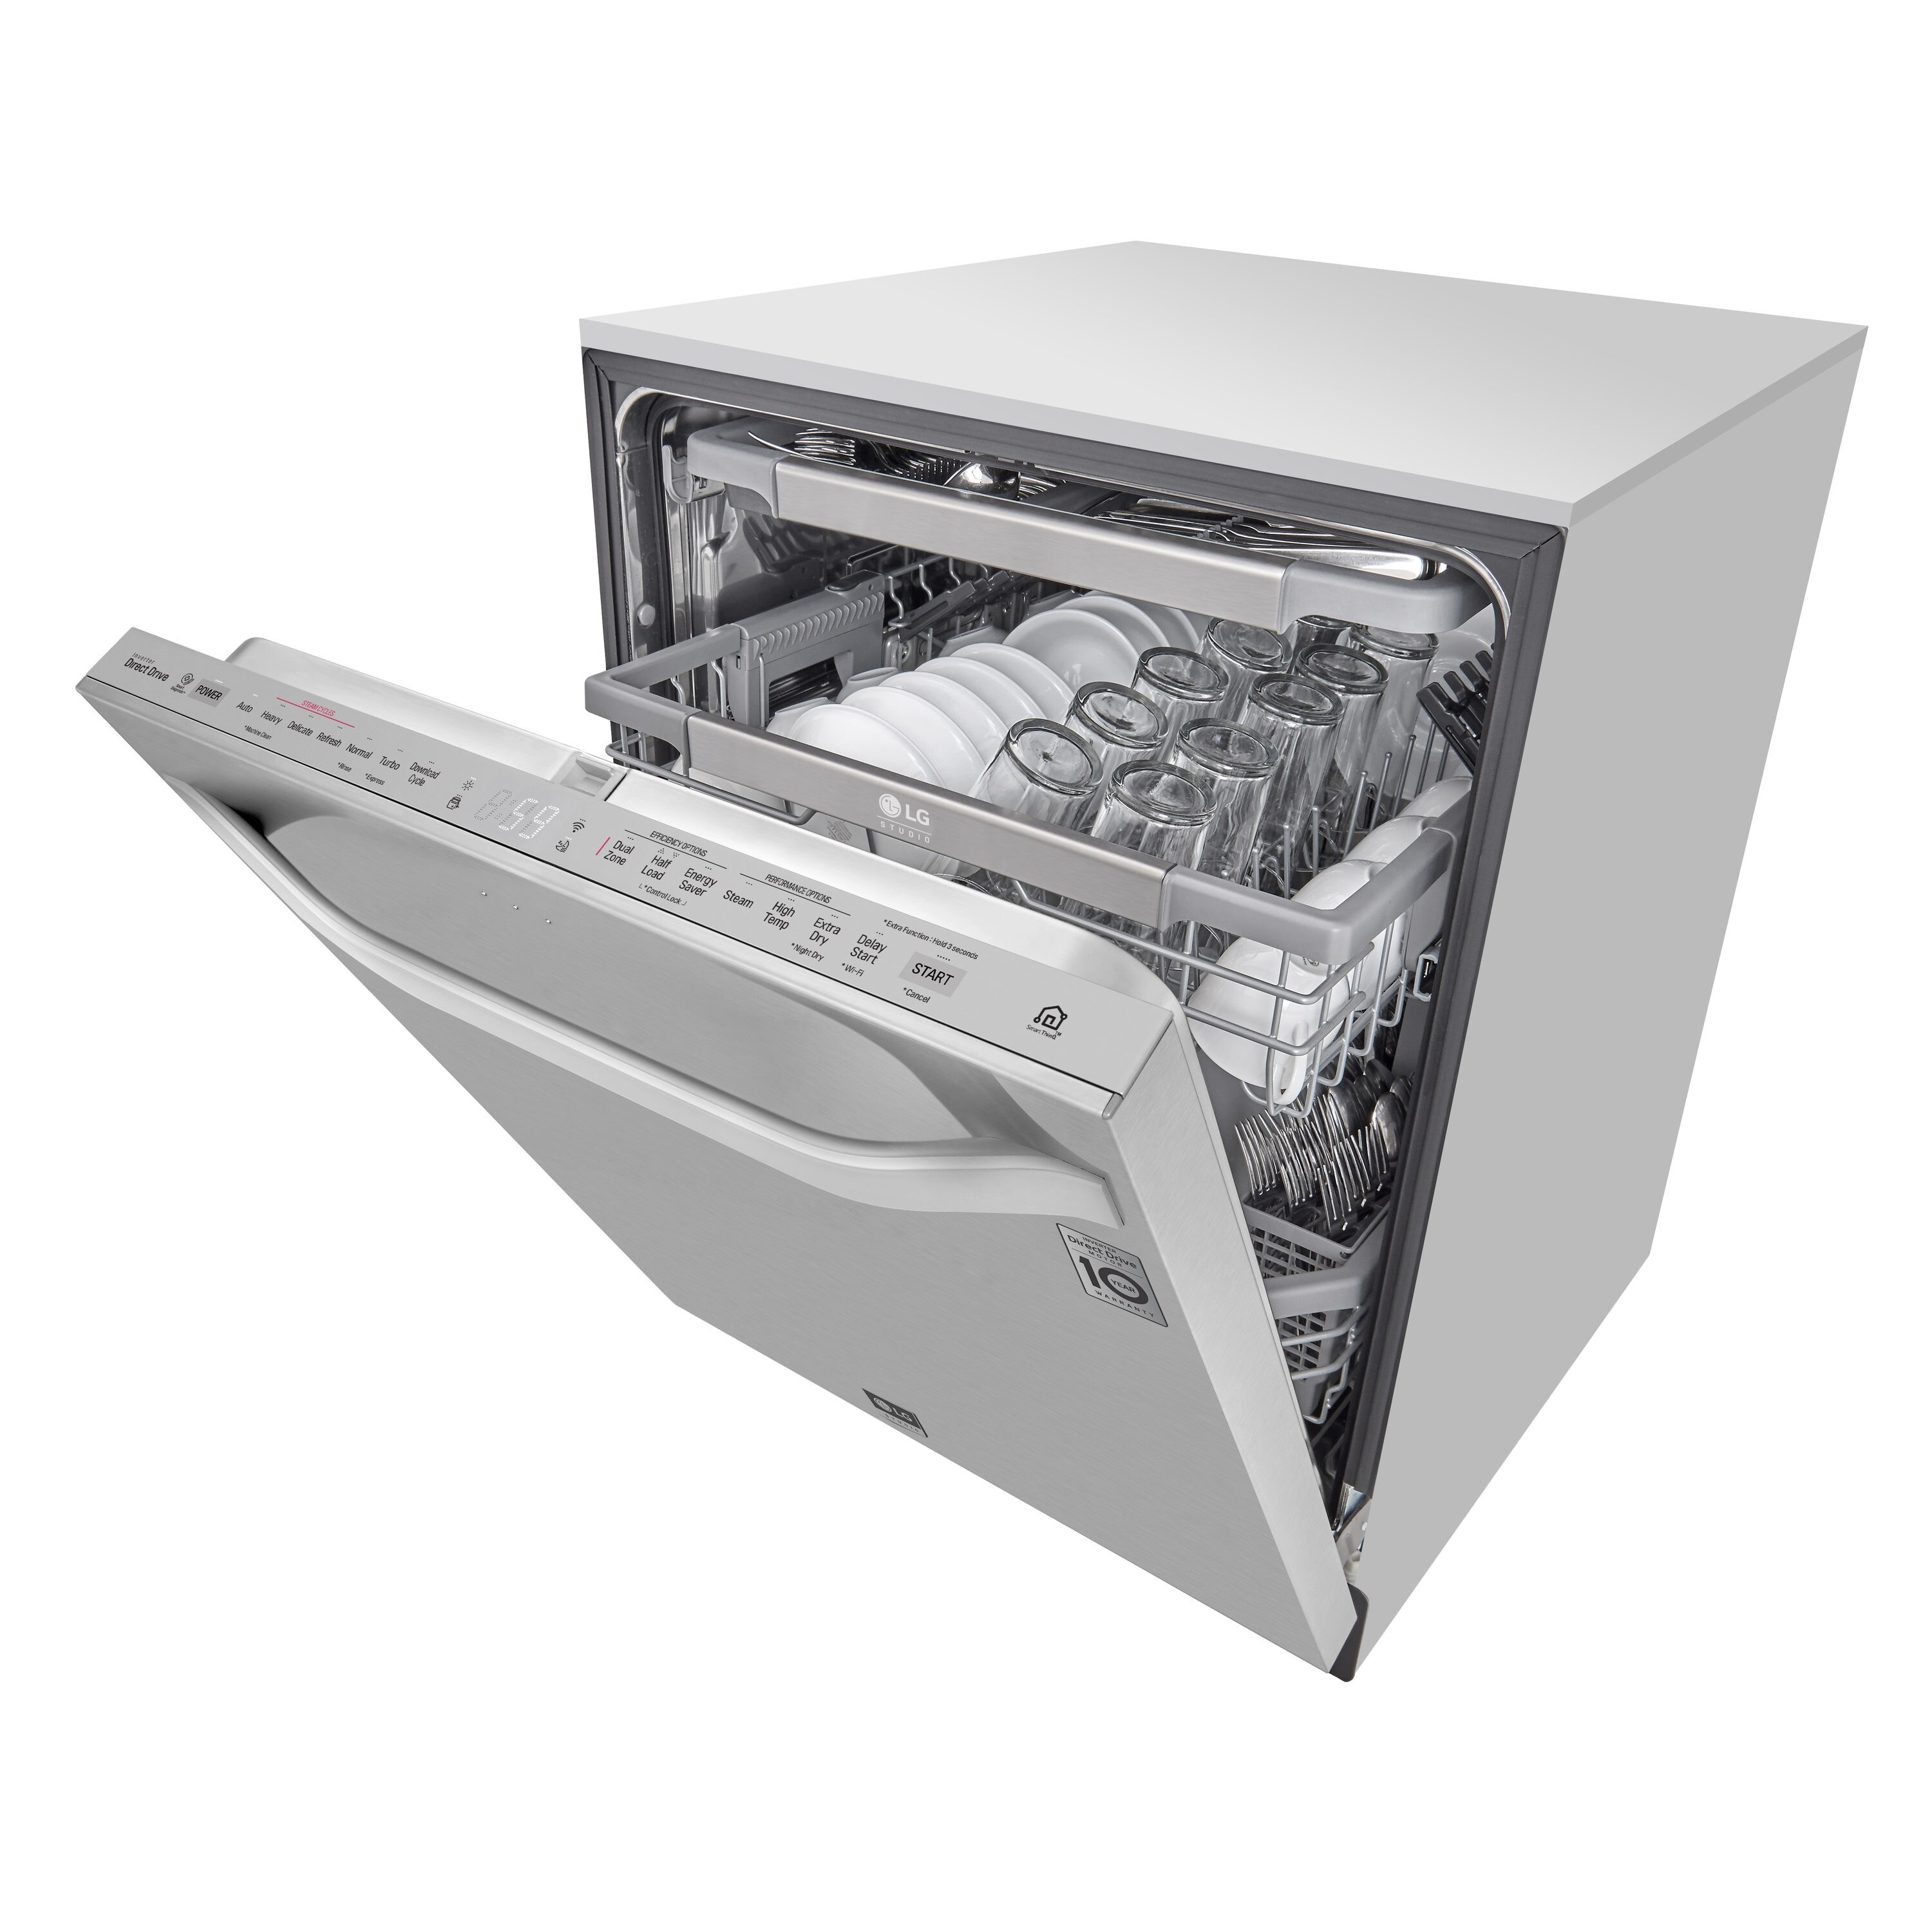 LG Dishwasher Somatsalt 1.2 KG